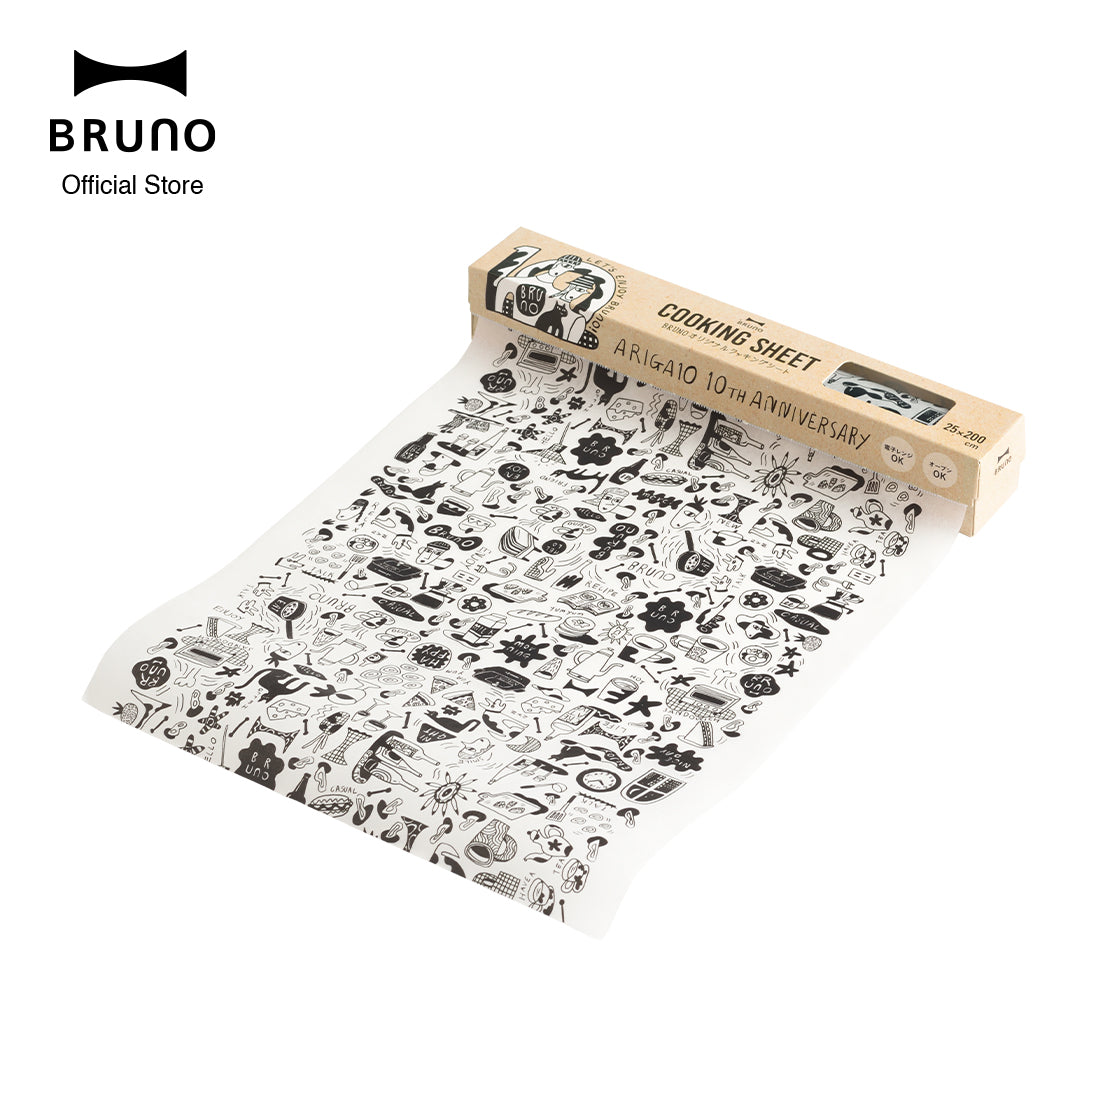 Bruno Cooking Sheet